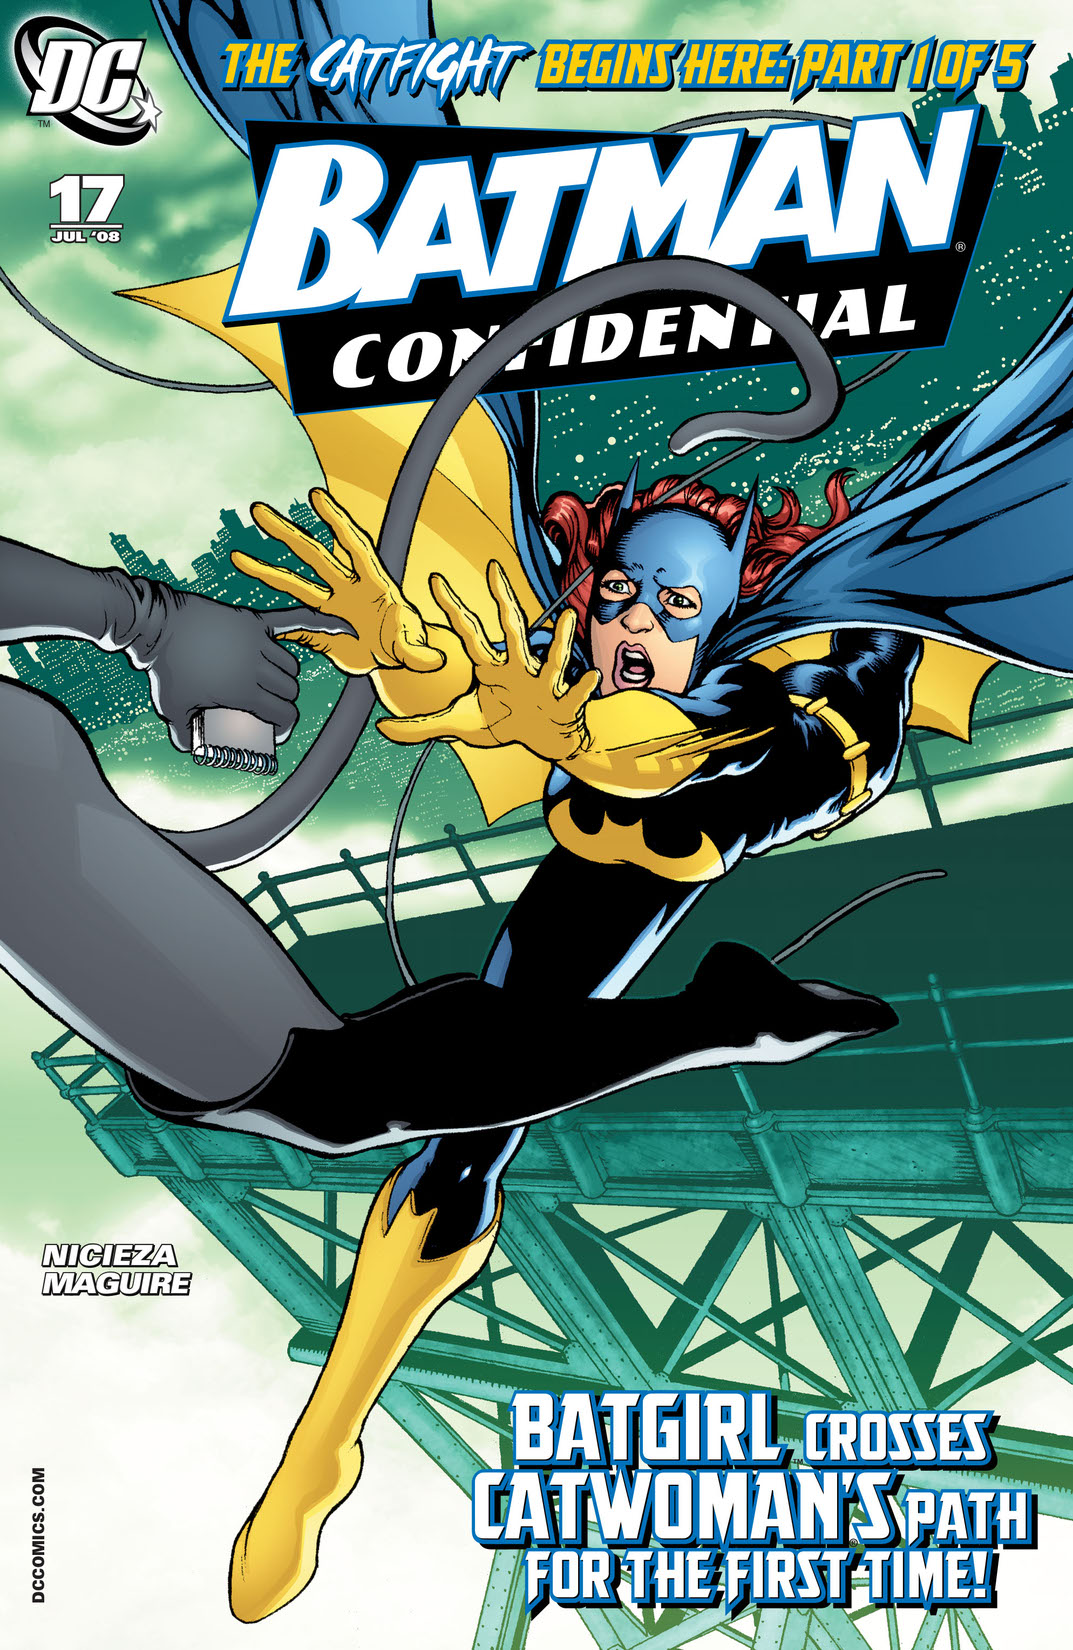 Batman Confidential #17 preview images